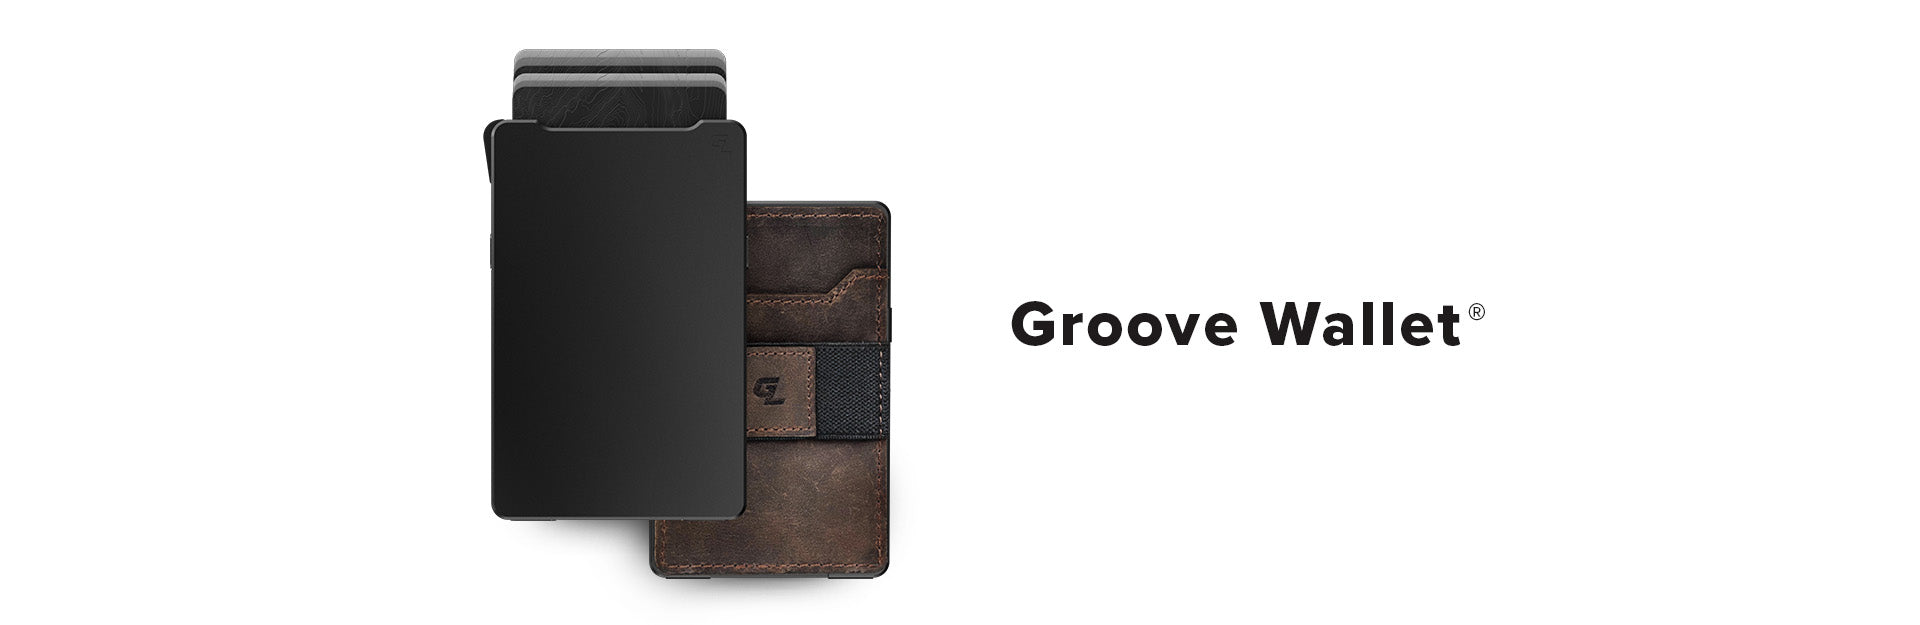 groove wallet